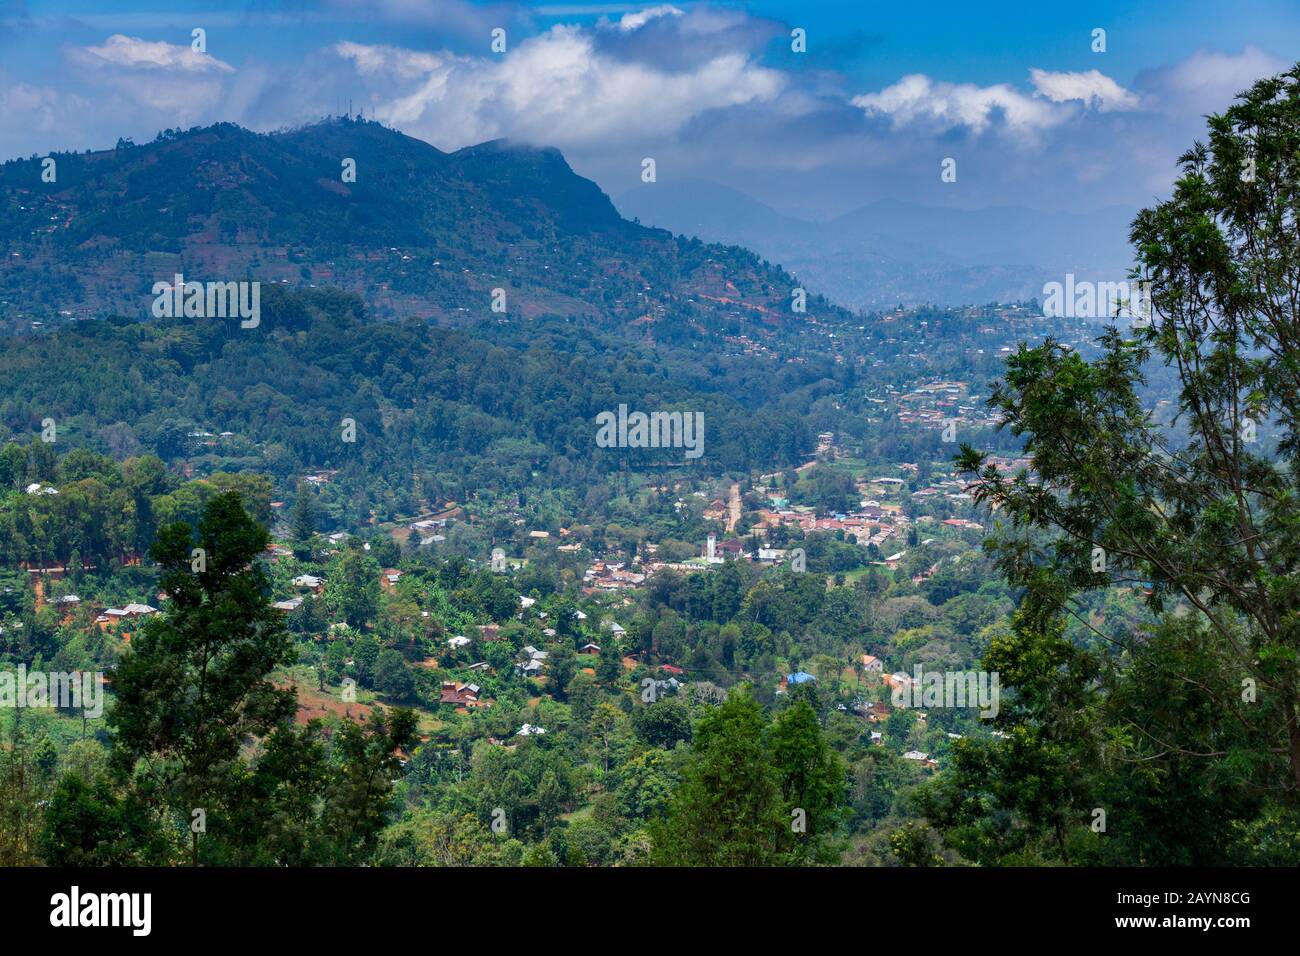 La ville de Luhoto est nichée dans une vallée fertile à environ 1 200 m, entourée de pins et d'eucalyptus mélangés à des bananes et à d'autres feuilles tropicales. Banque D'Images